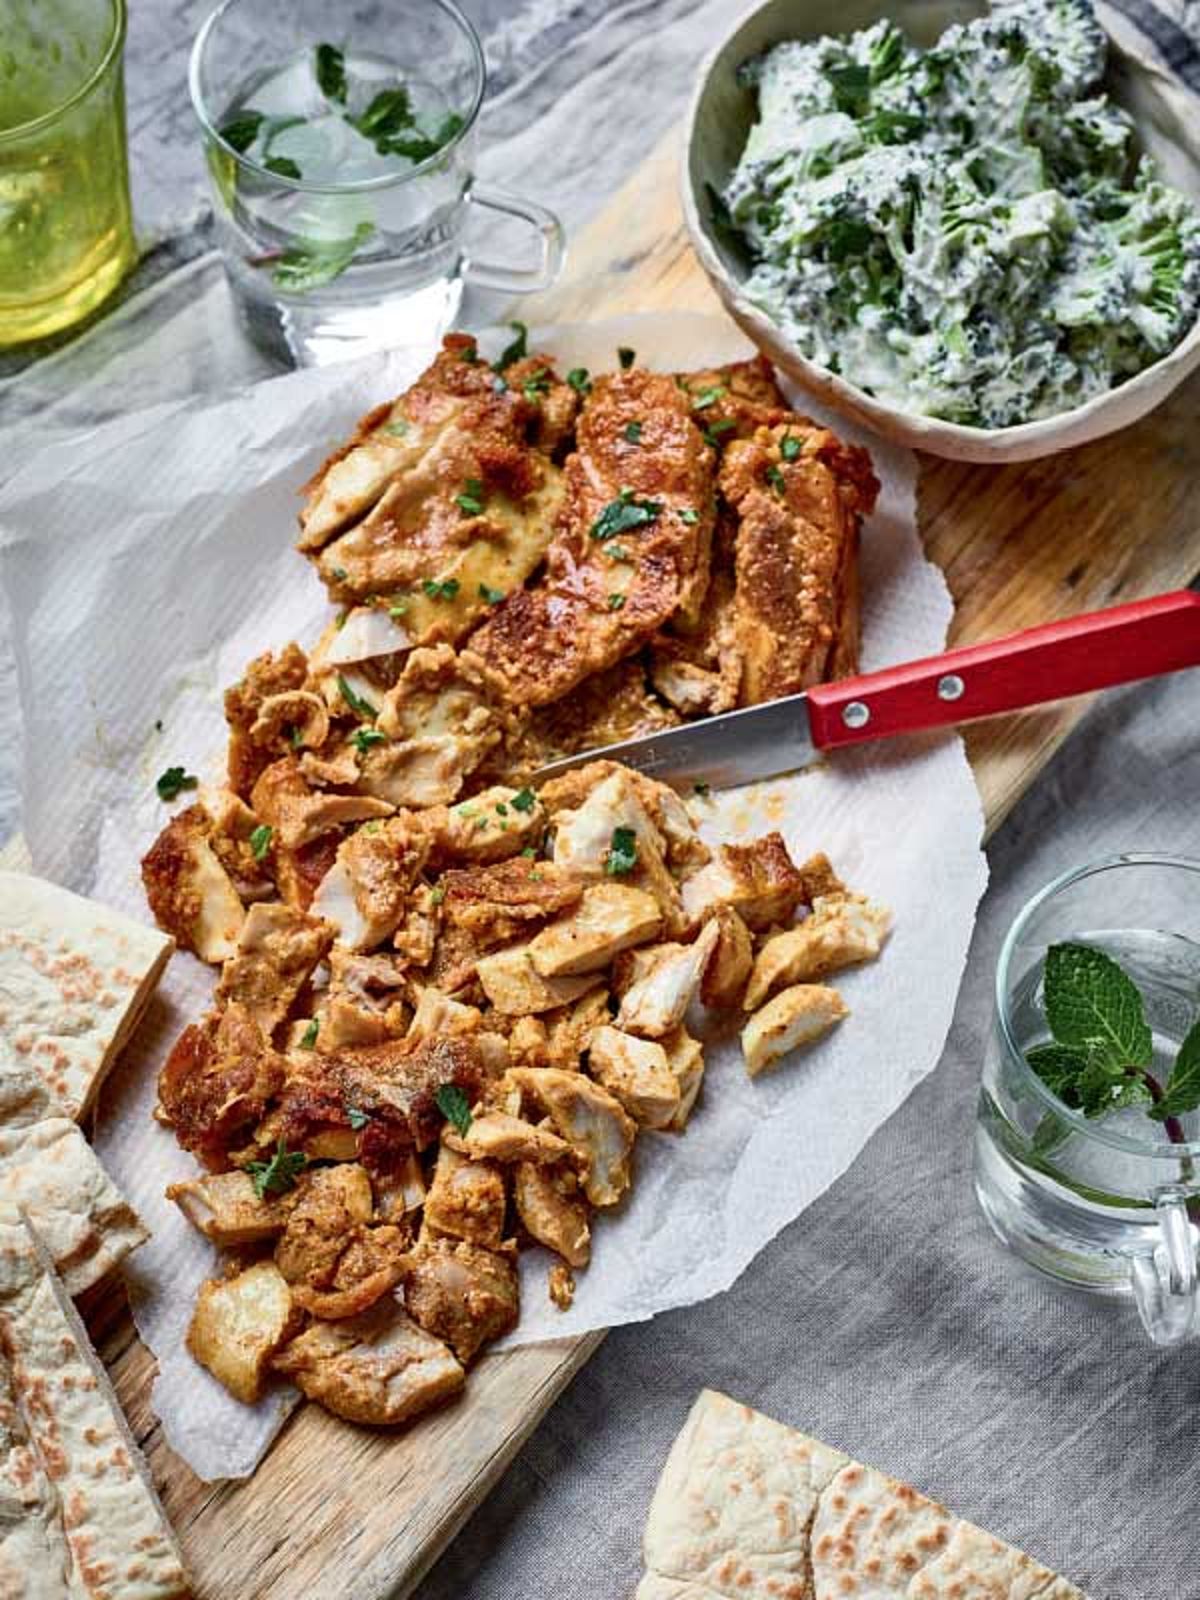 Nadiya Hussain’s Chicken Shawarma